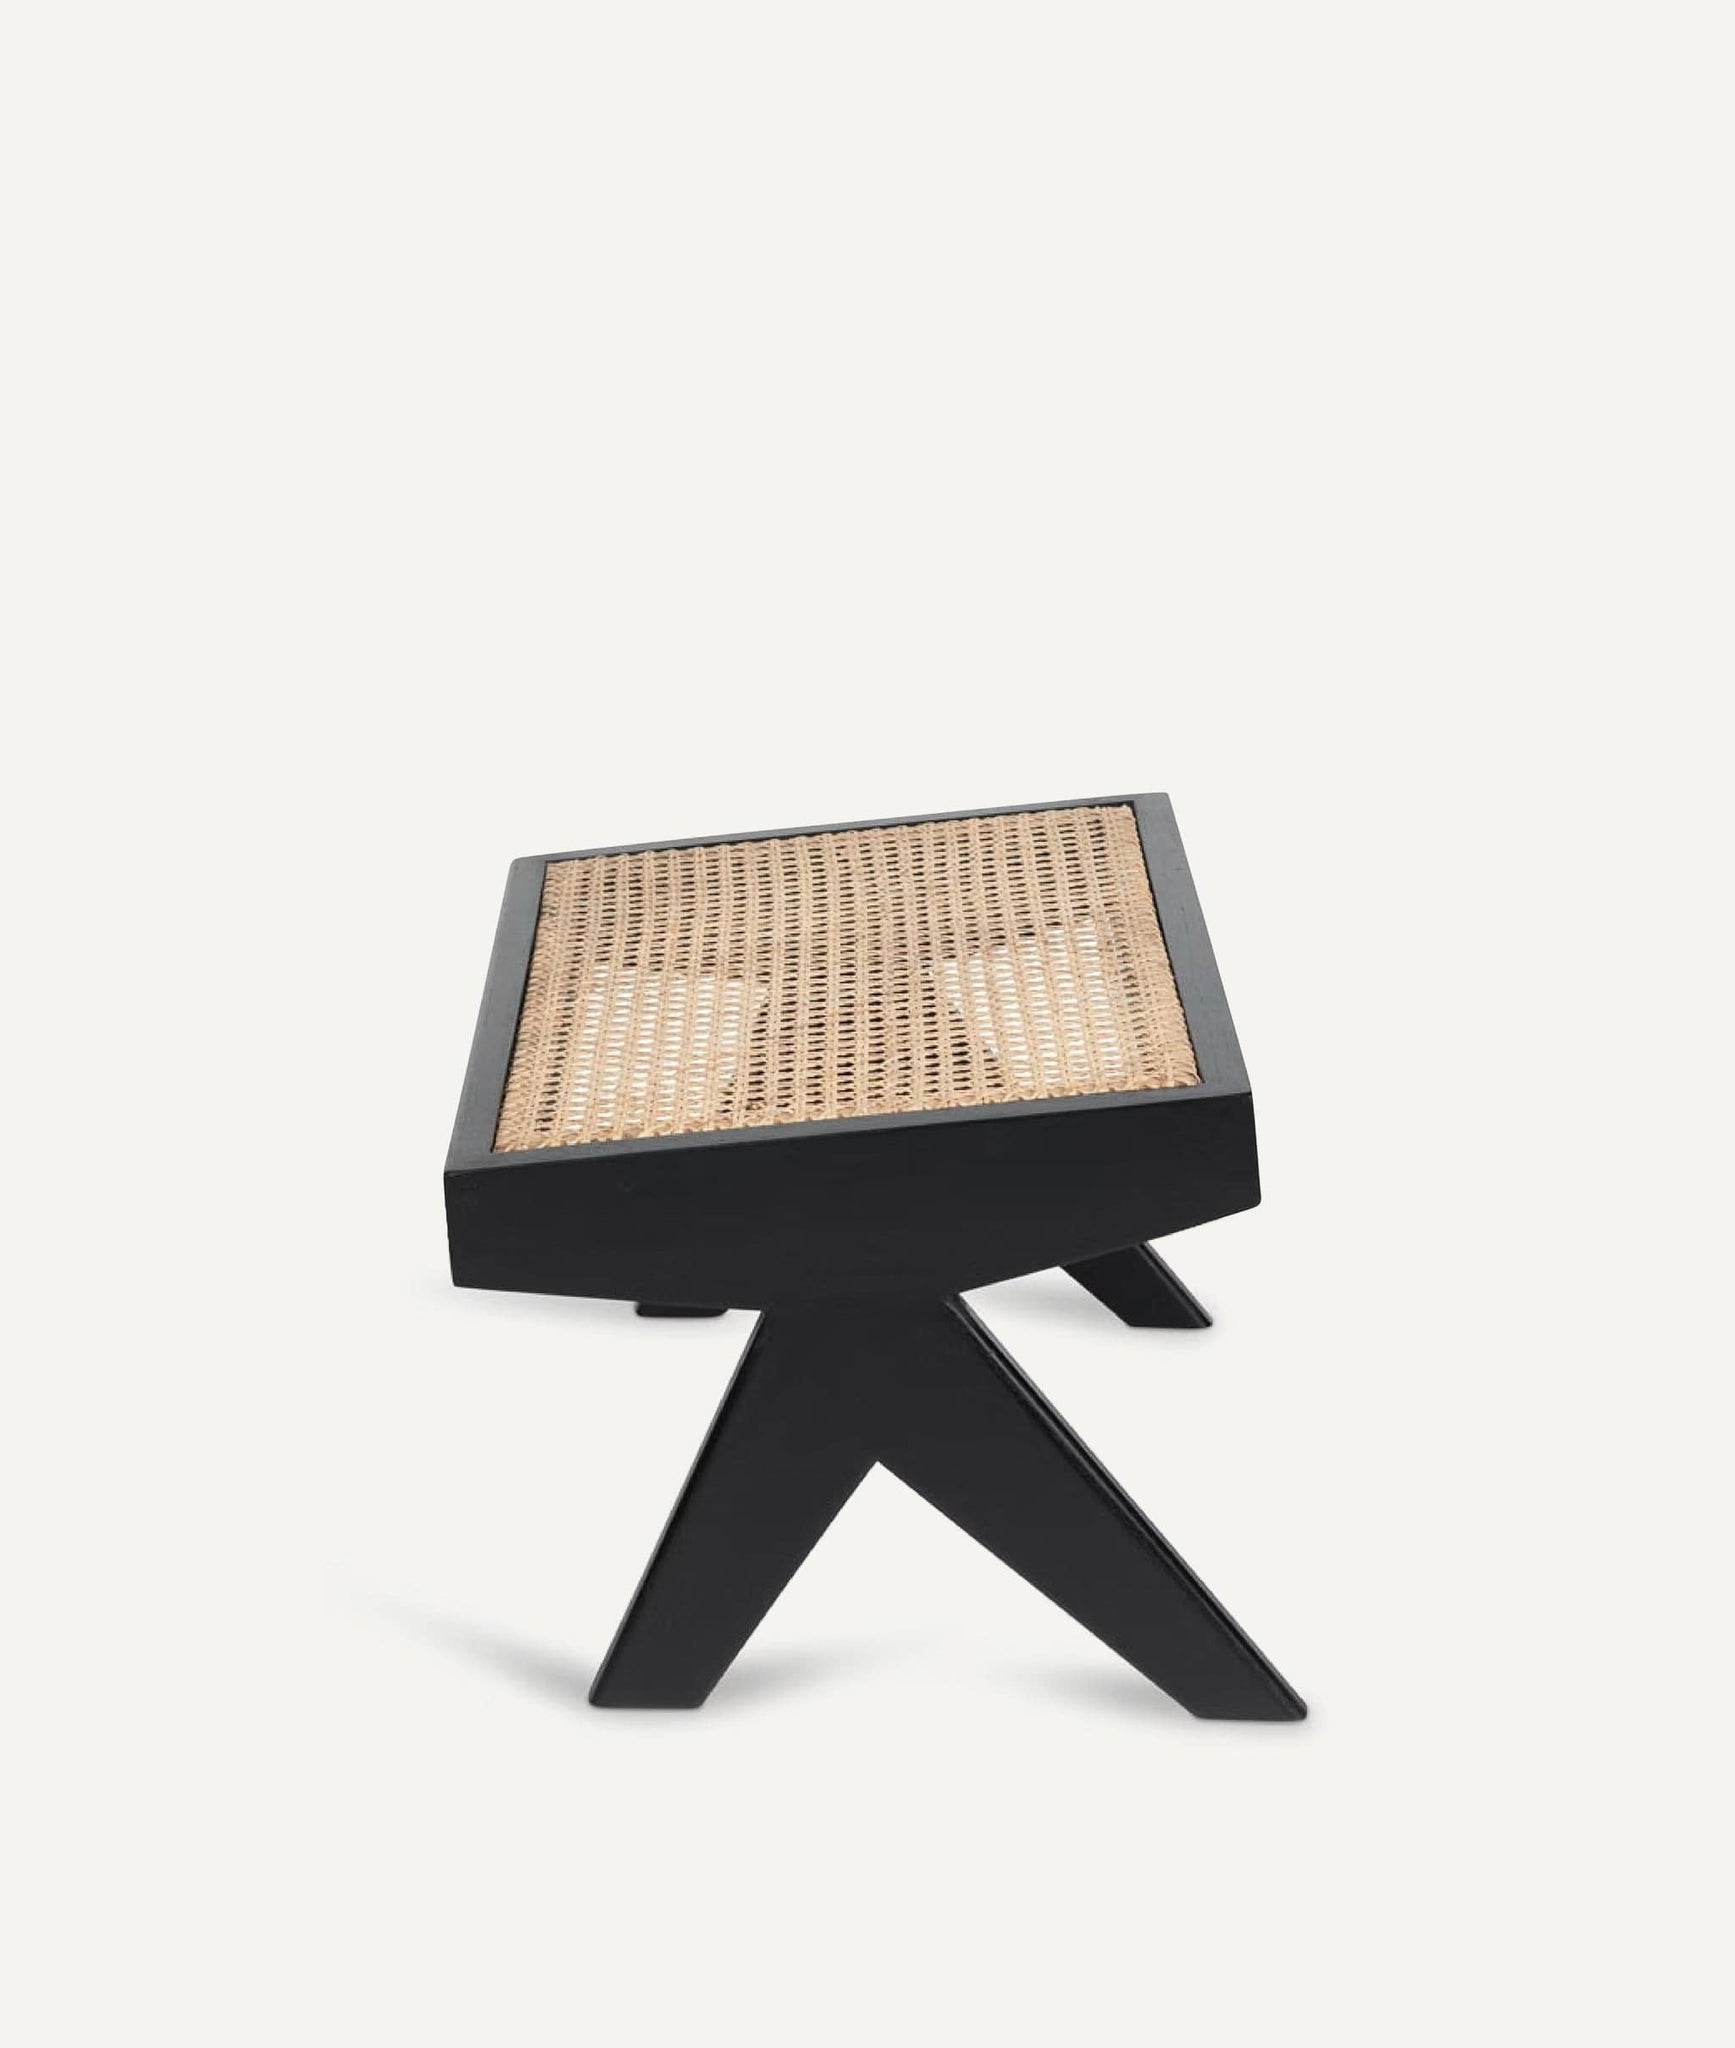 Footstool in Wood